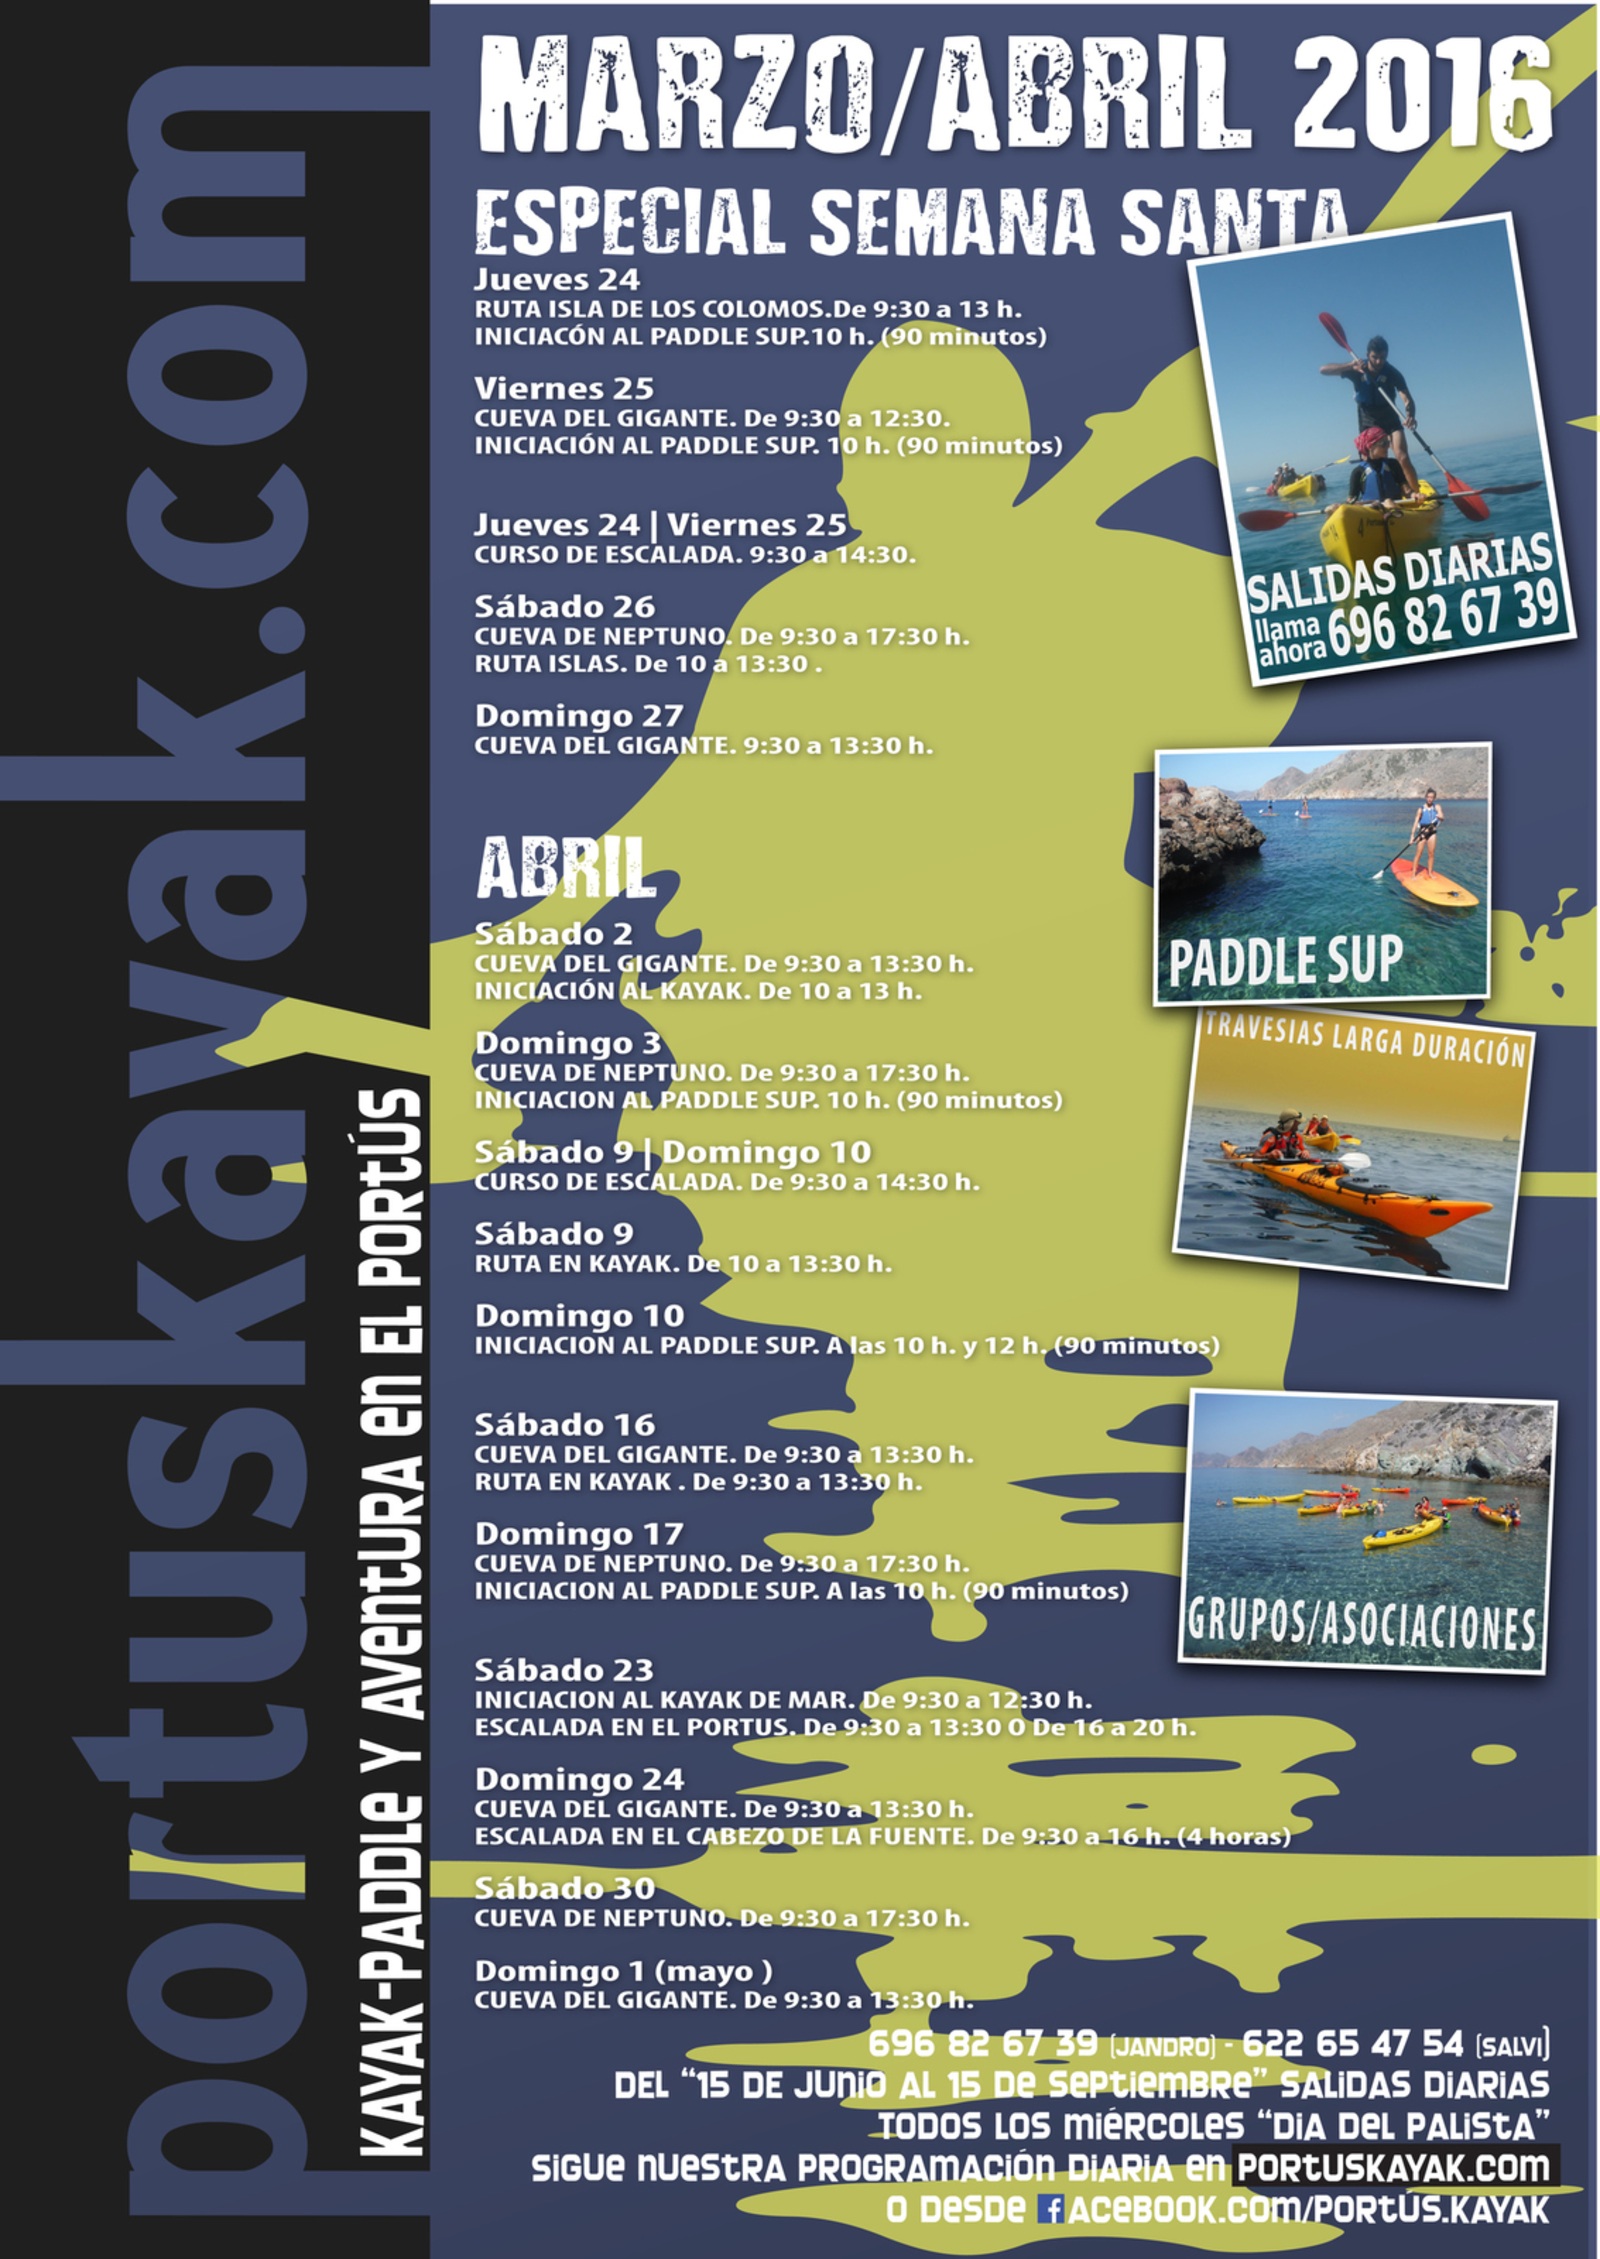 Programación de actividades de Portús Kayak en Marzo y Abril.